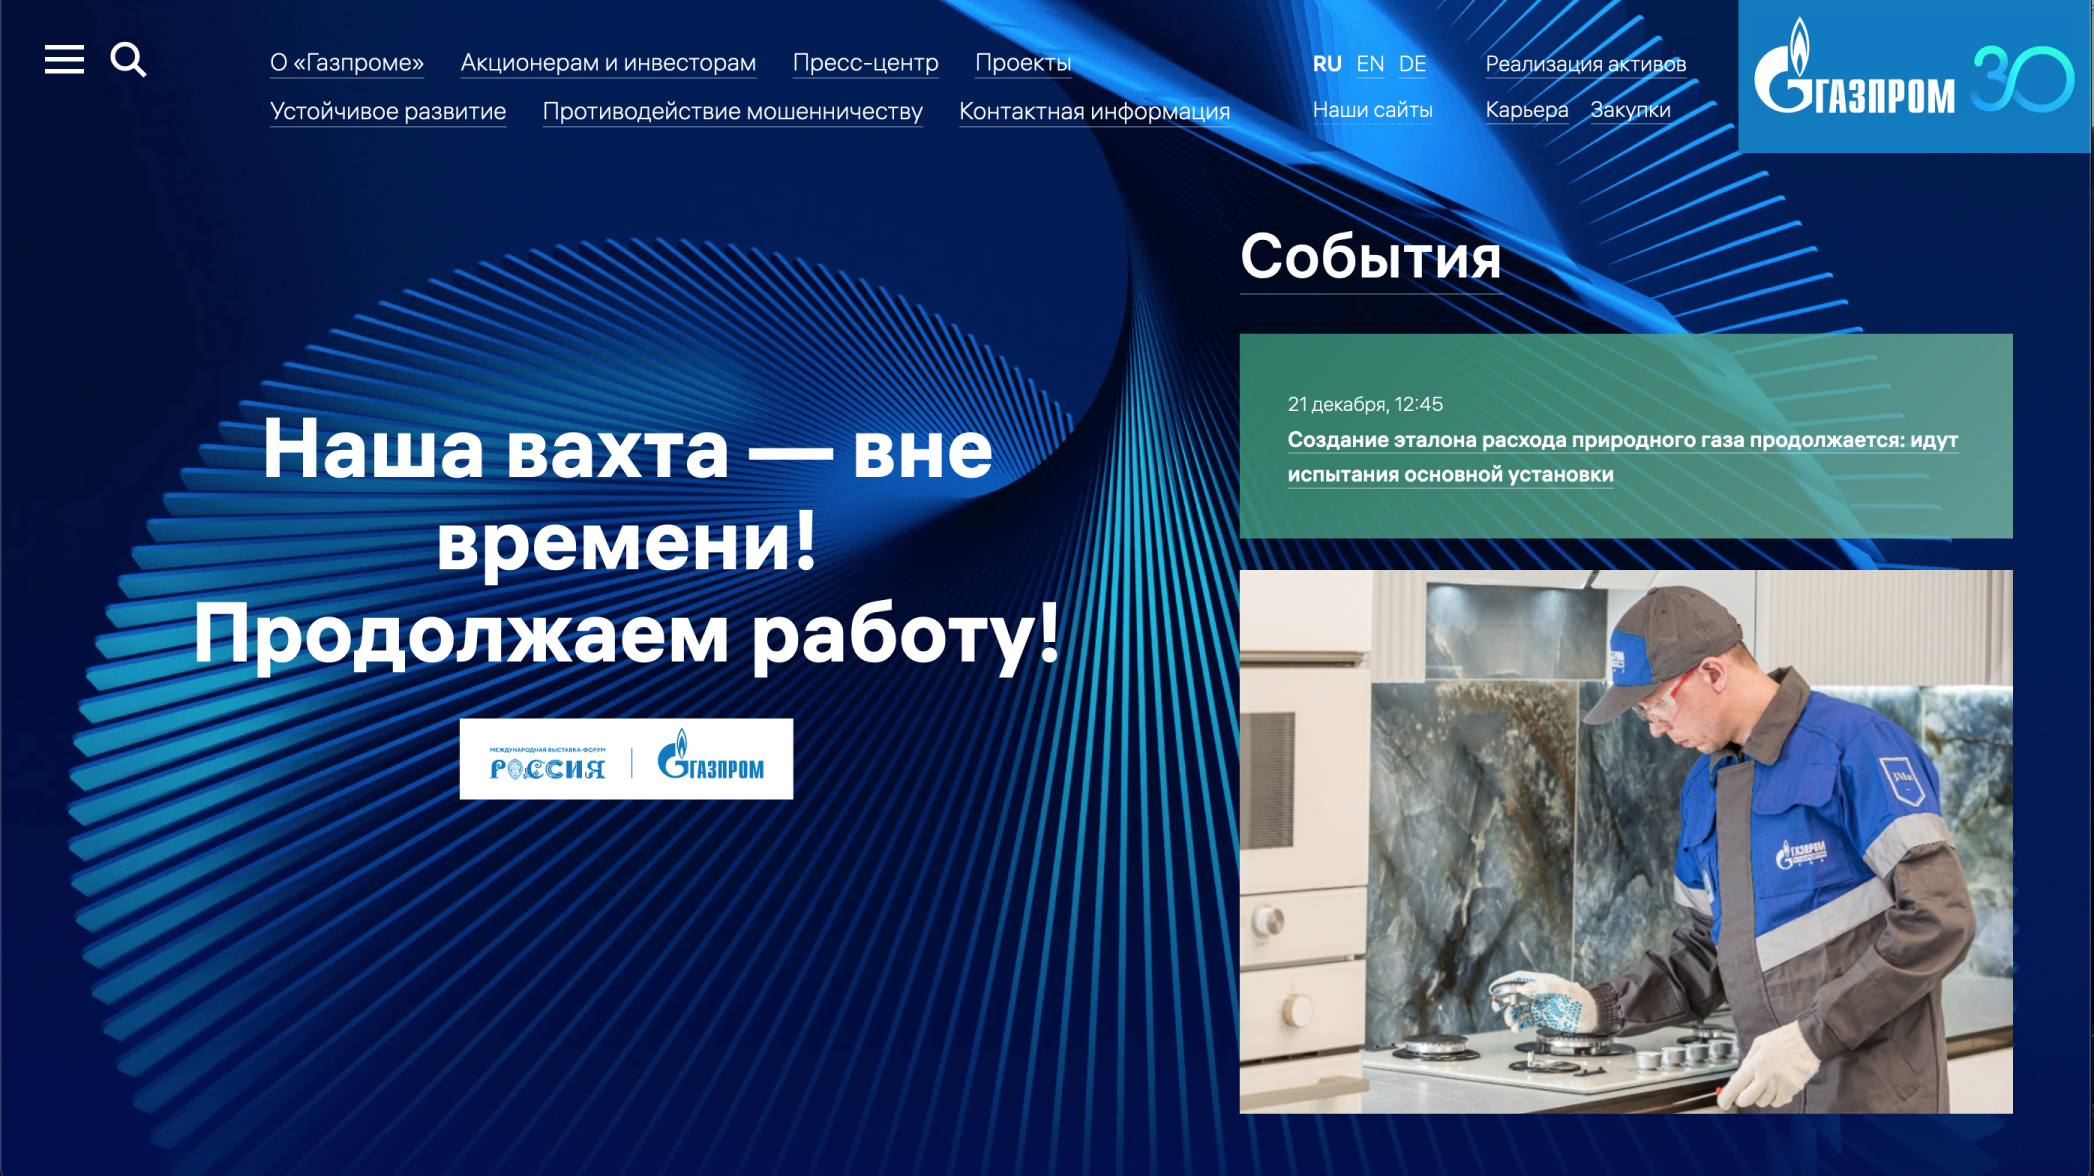 Сайт «Газпрома» показывает всю информацию о компании: и сотрудникам, и акционерам, и прессе. Источник: gazprom.ru